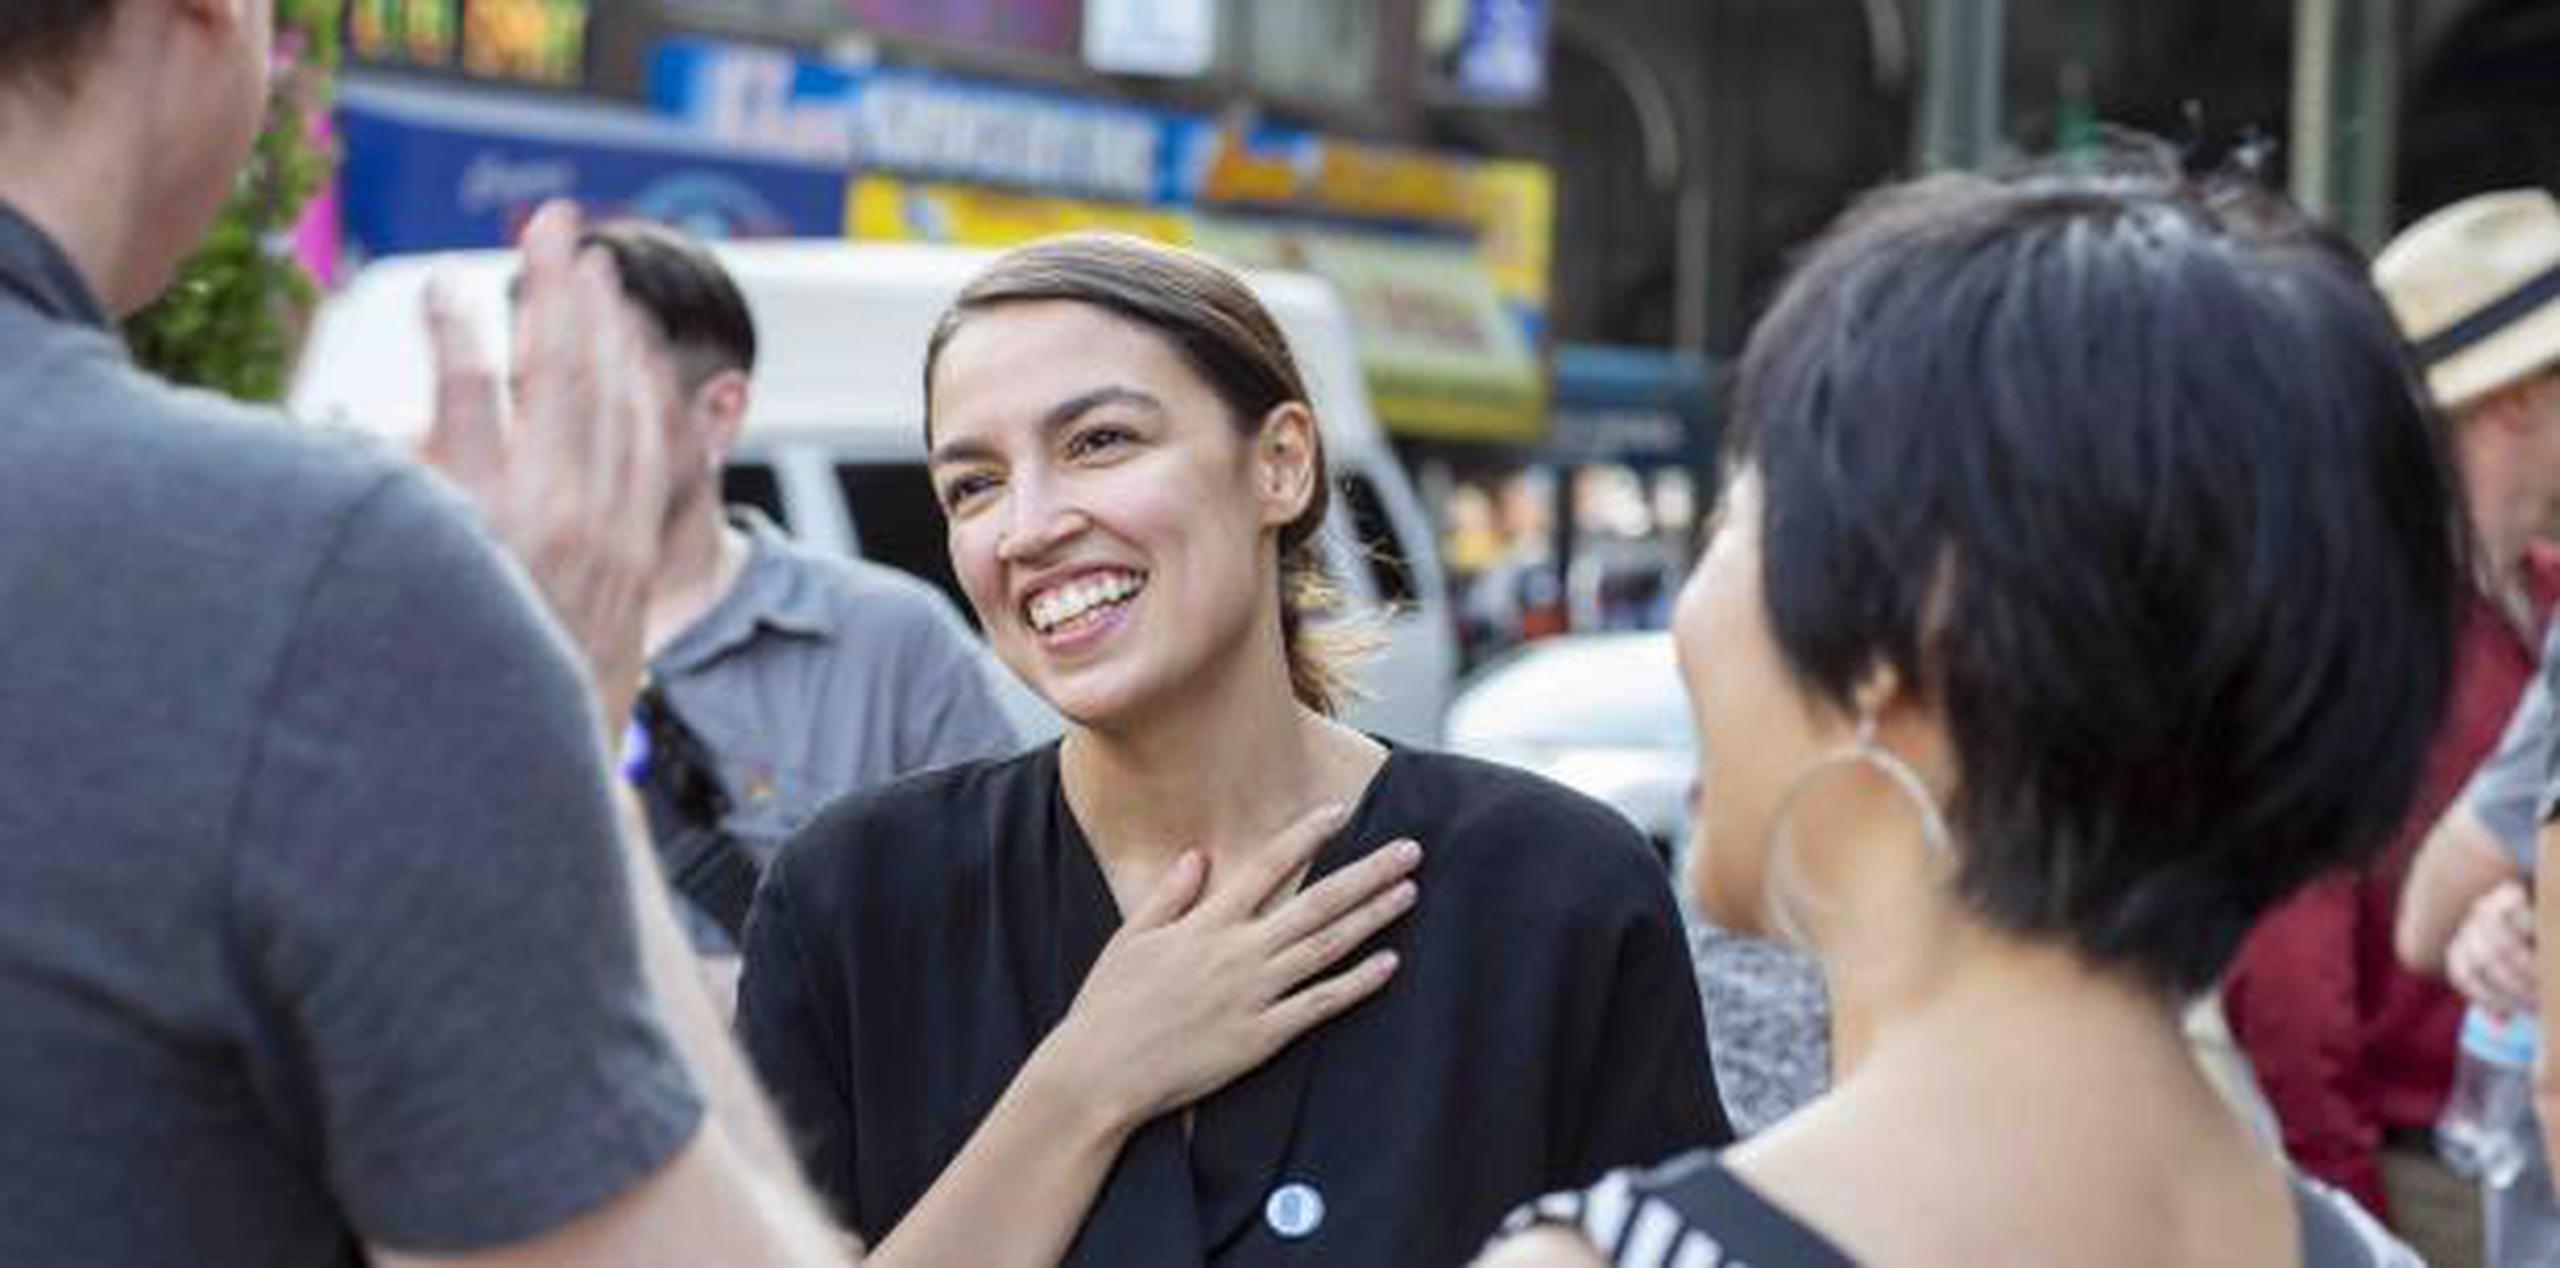 Alexandria Ocasio Cortez es candidata para el Congreso estadounidense corriendo por Nueva York en el distrito 14. (Archivo)